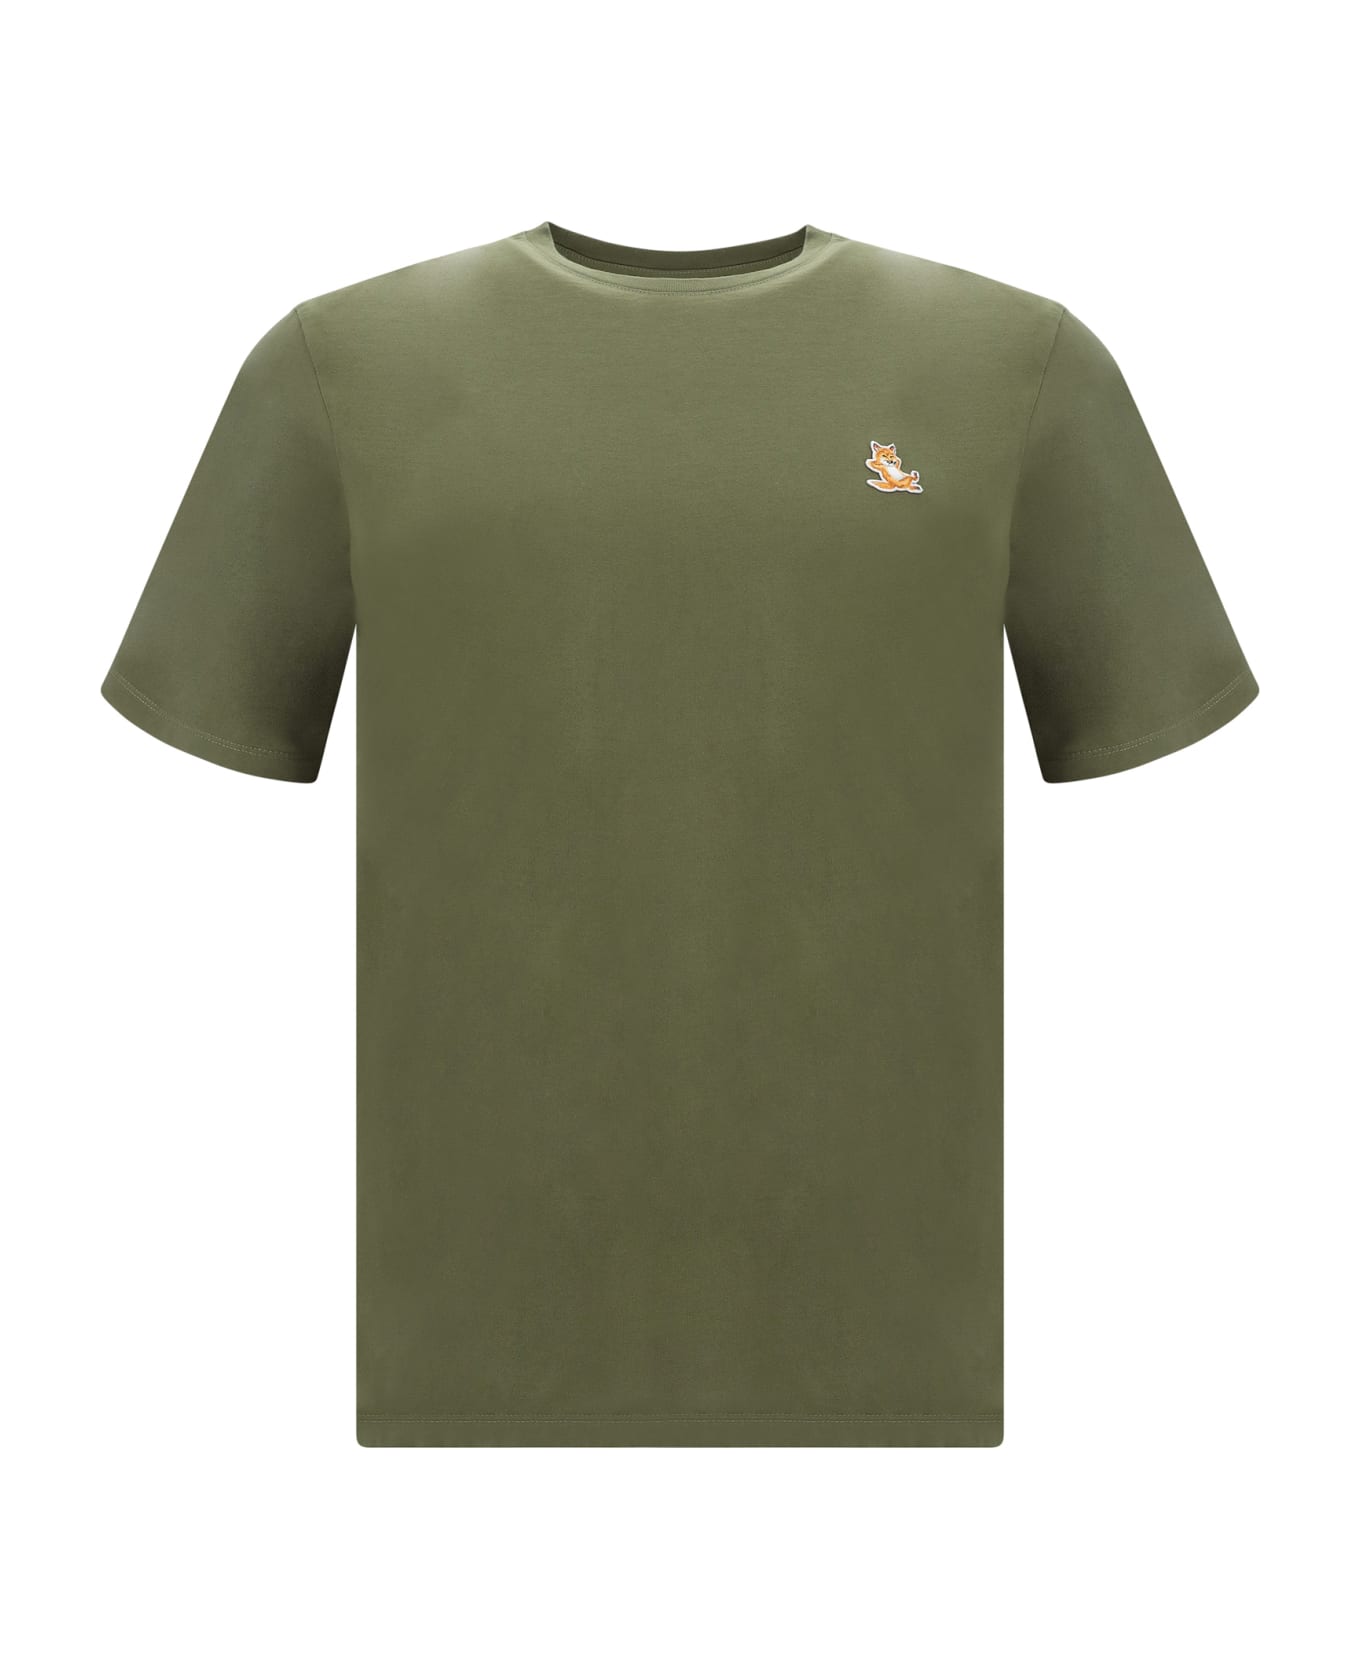 Maison Kitsuné T-shirt - Military Green